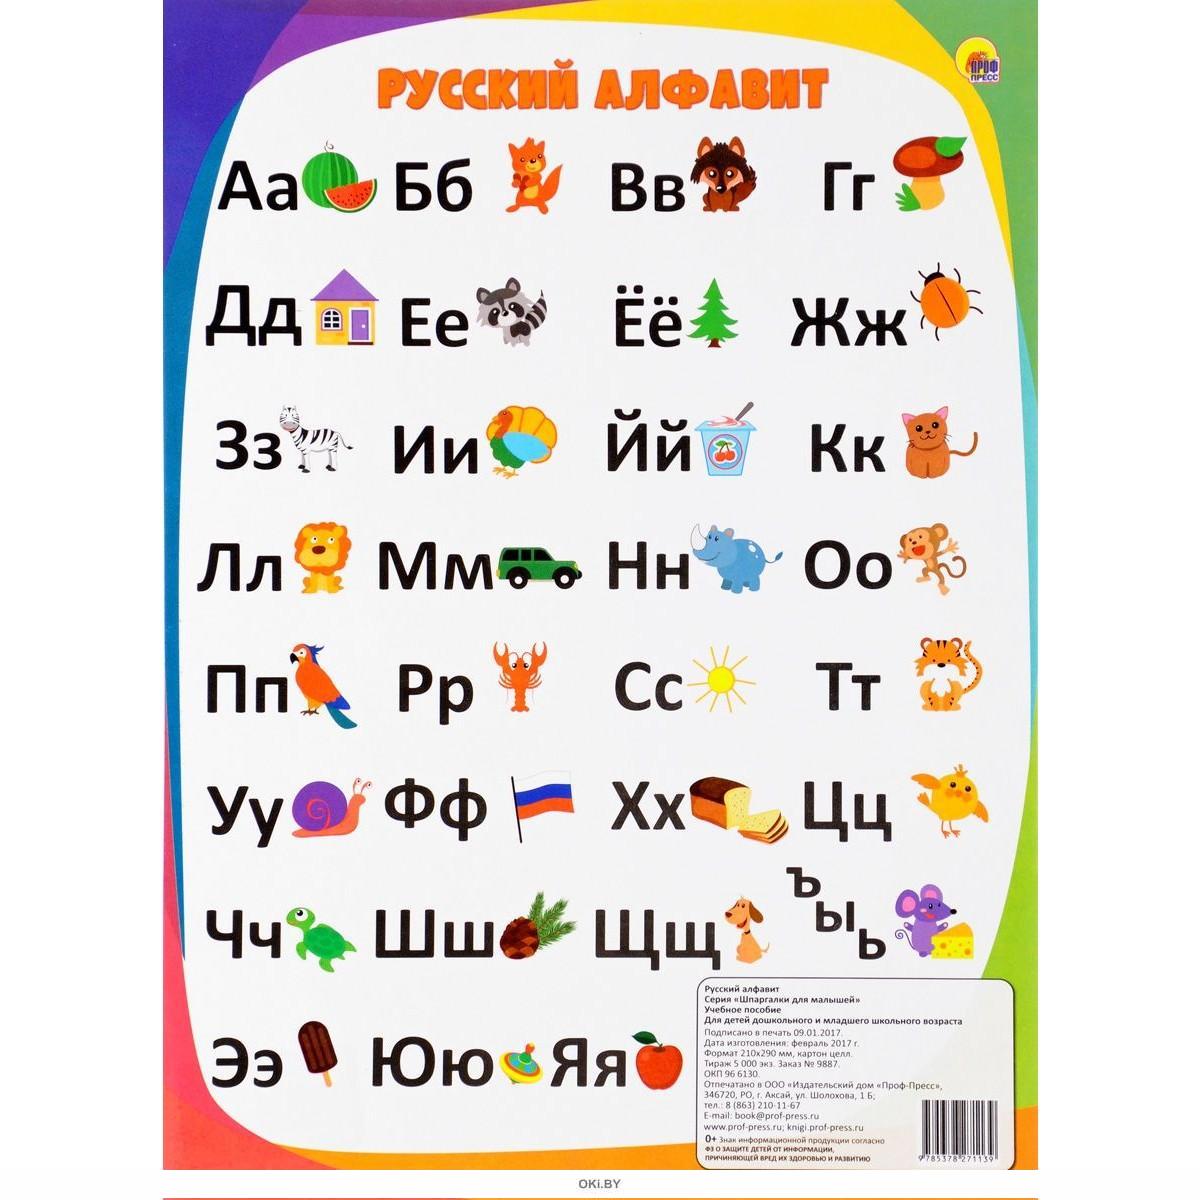 Включи фотки алфавита. Алфавит. Алфавит русского языка. Alфавит. Алфавит для детей.